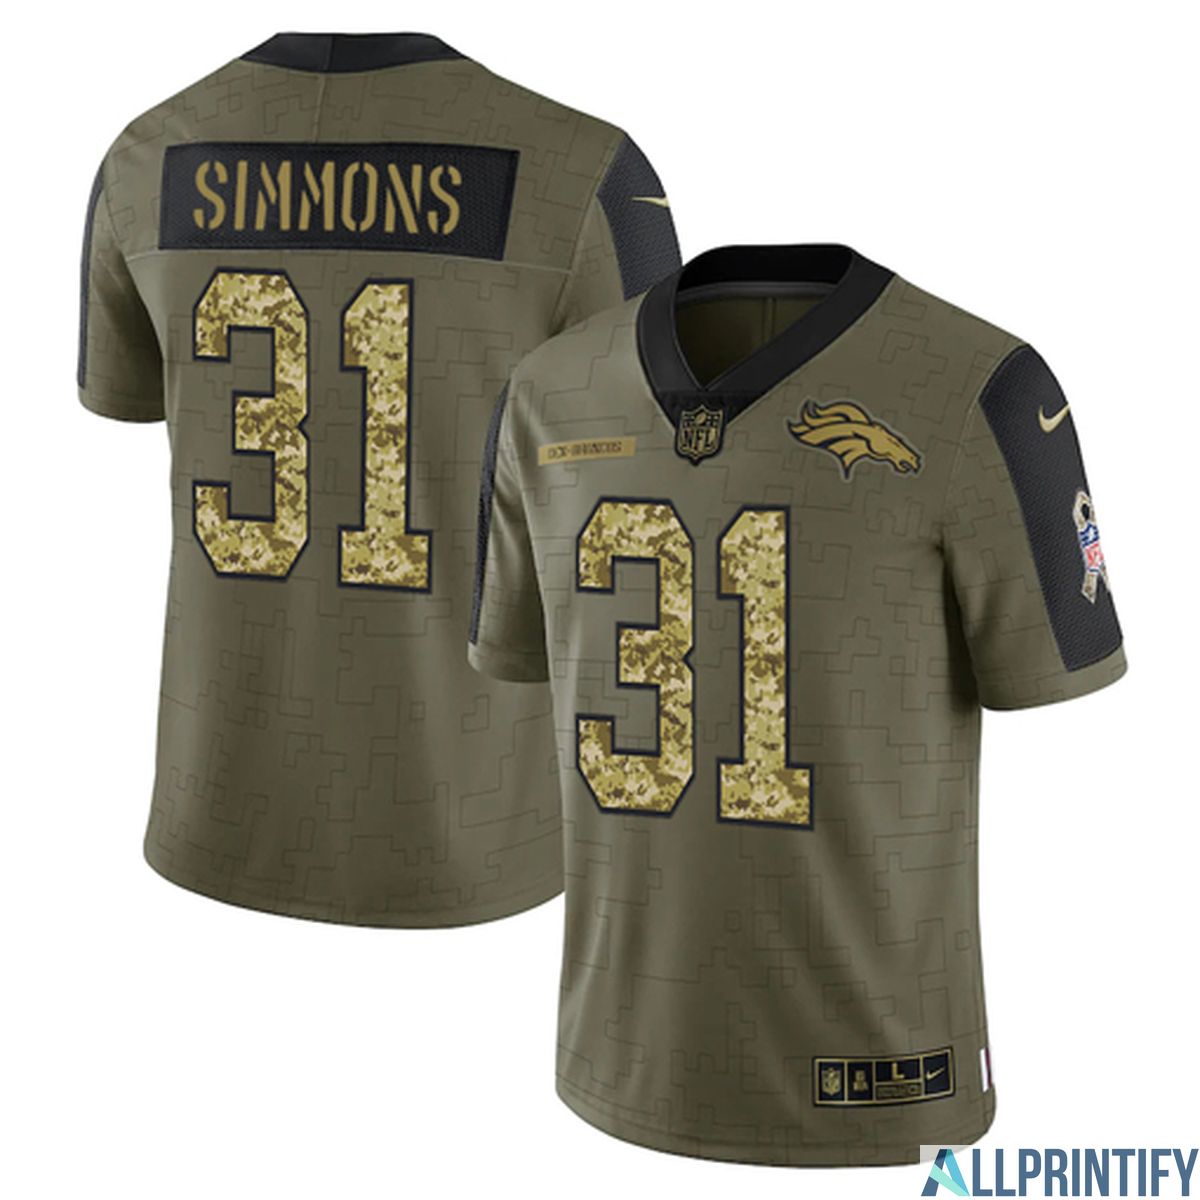 Simmons Denver Broncos 31 Olive Vapor Limited Player Jersey